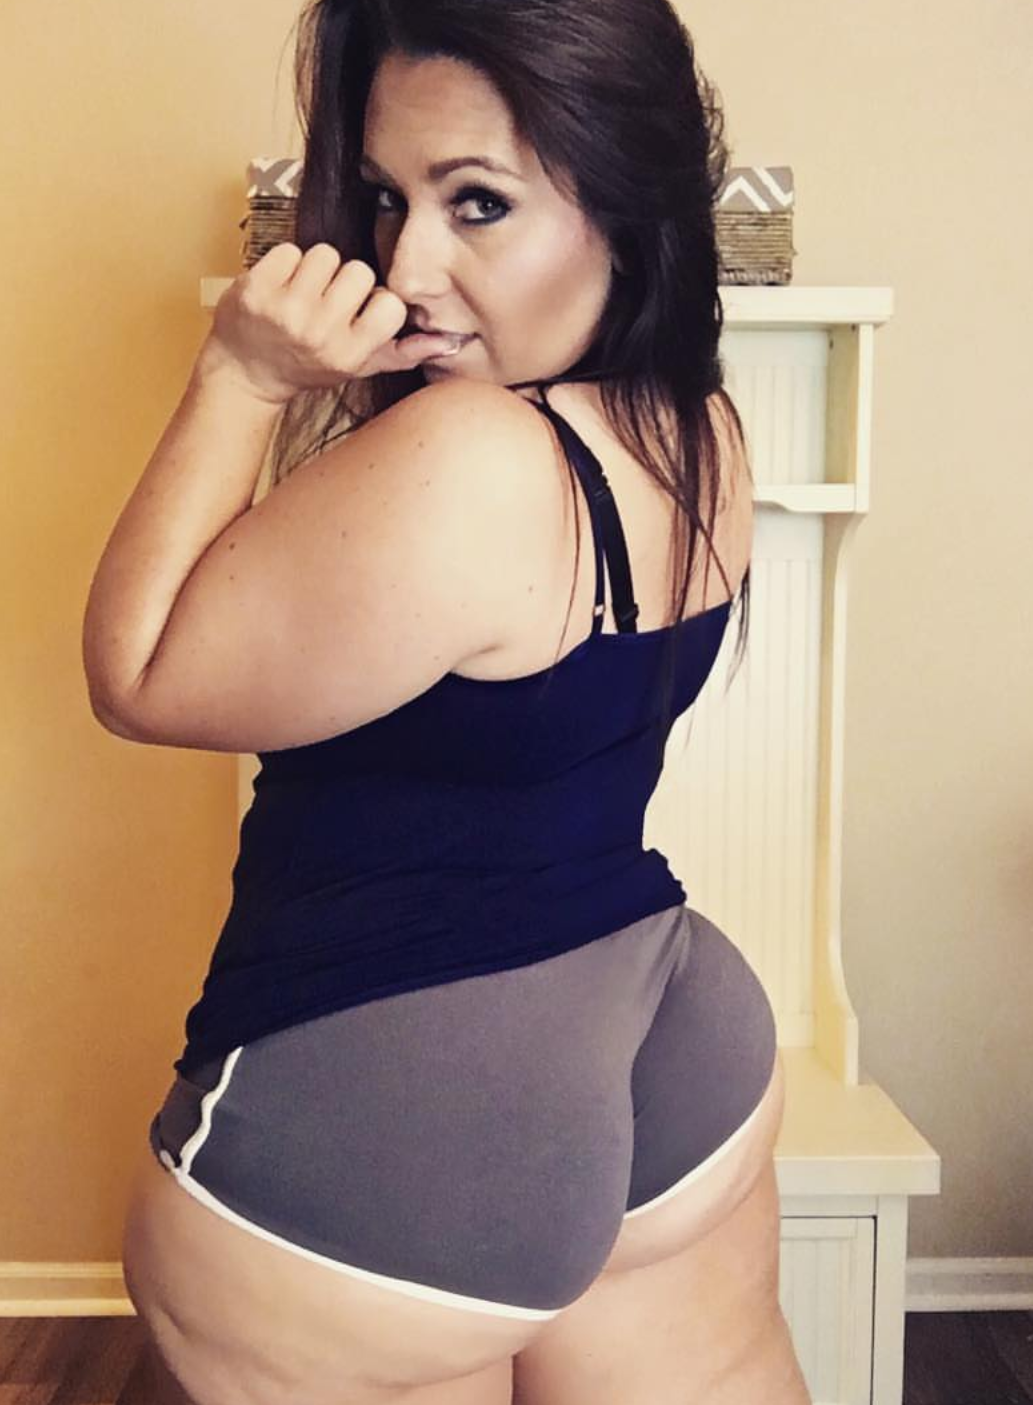 Ass fat latina woman